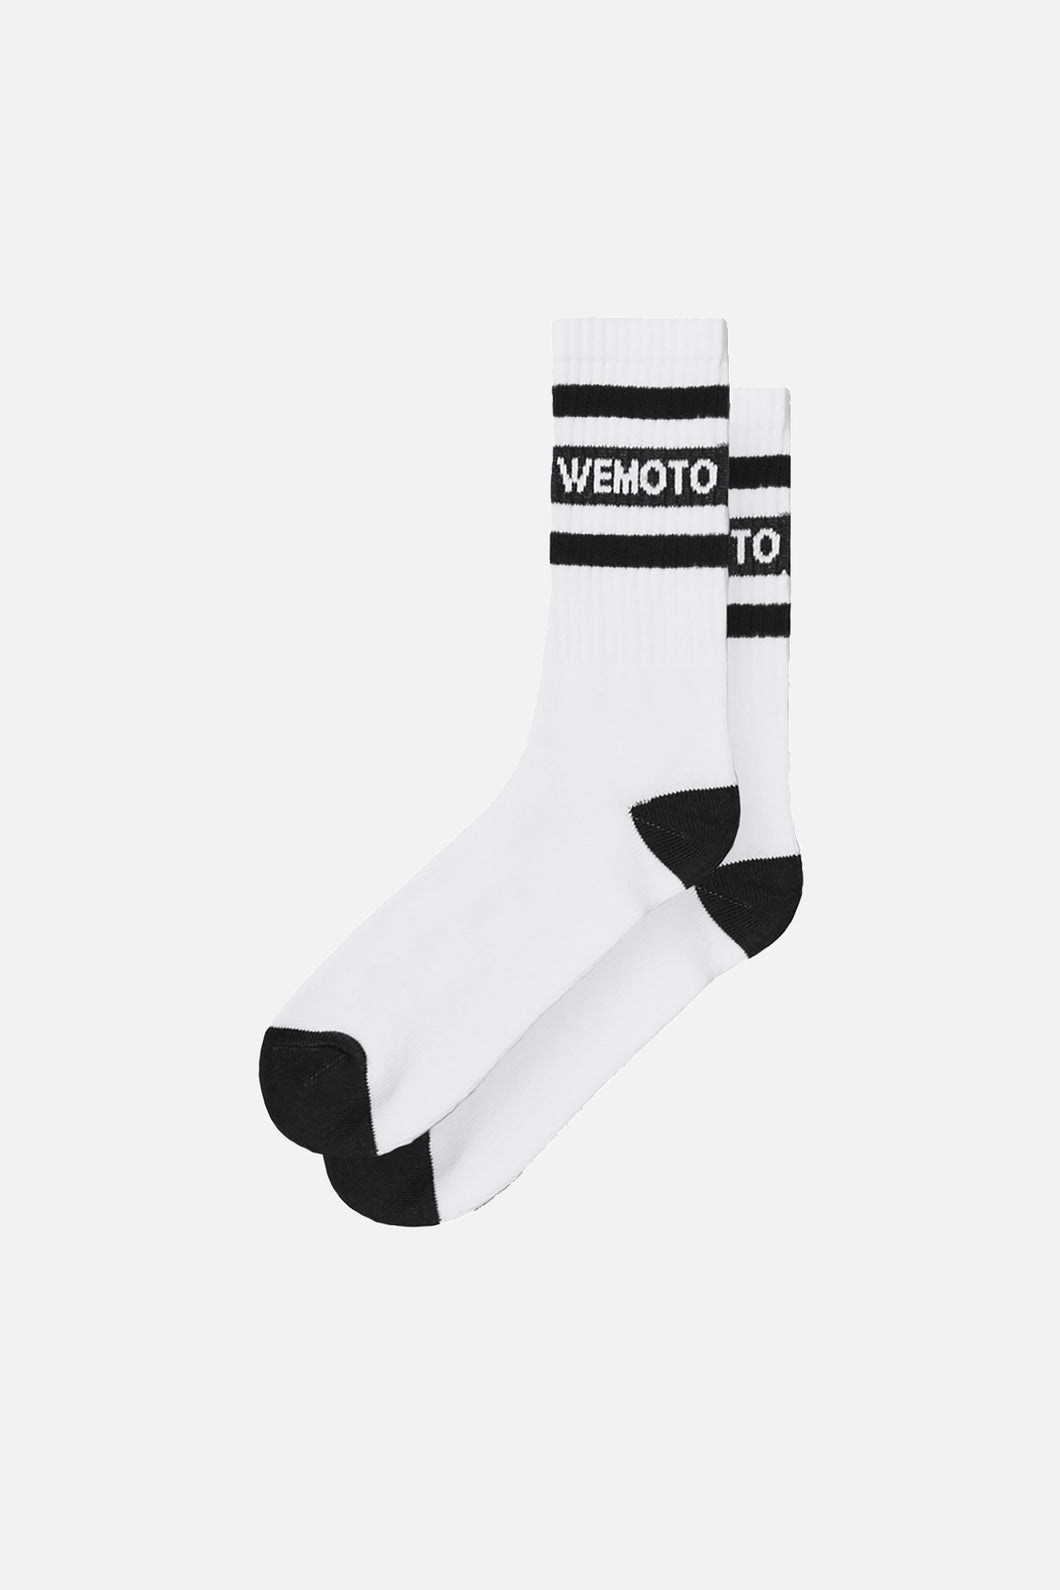 Milburry Socks Black/White